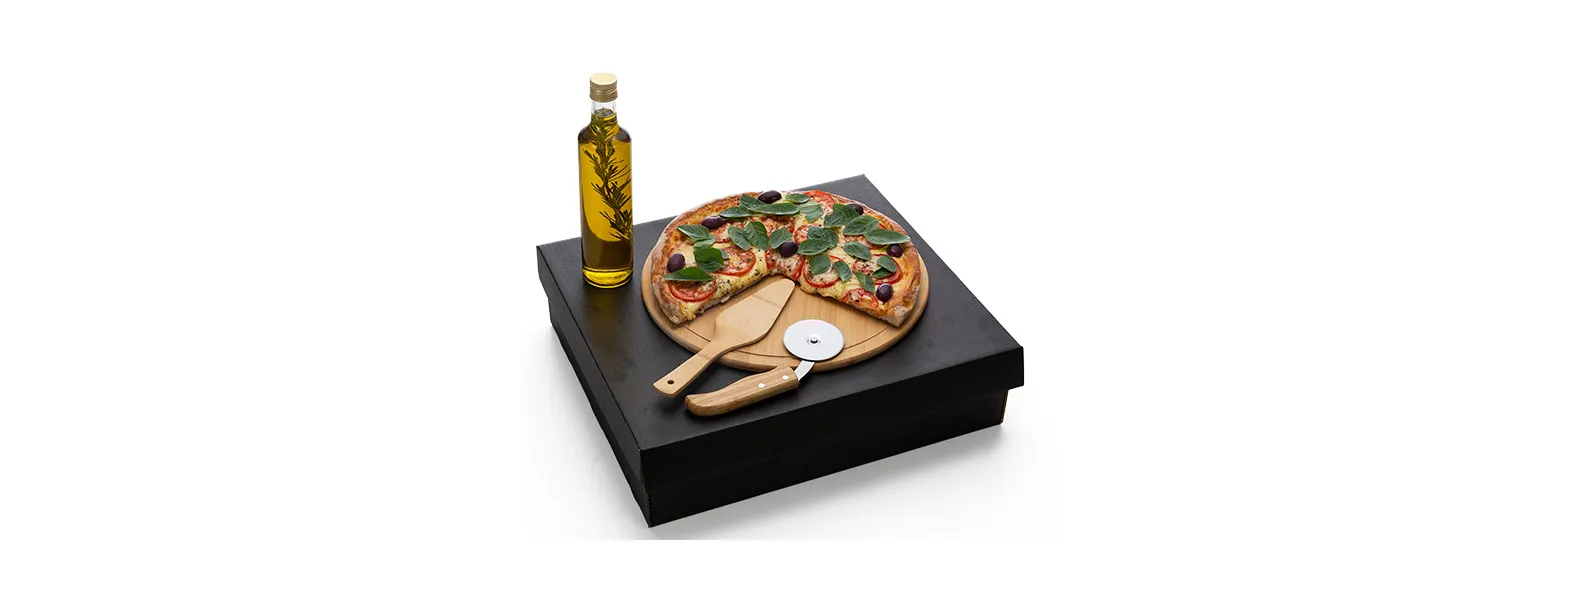 Conta com tábua redonda em tripla camada invertida e espátula em bambu; Cortador de pizza em inox/bambu e garrafa de vidro para azeite 250ml.